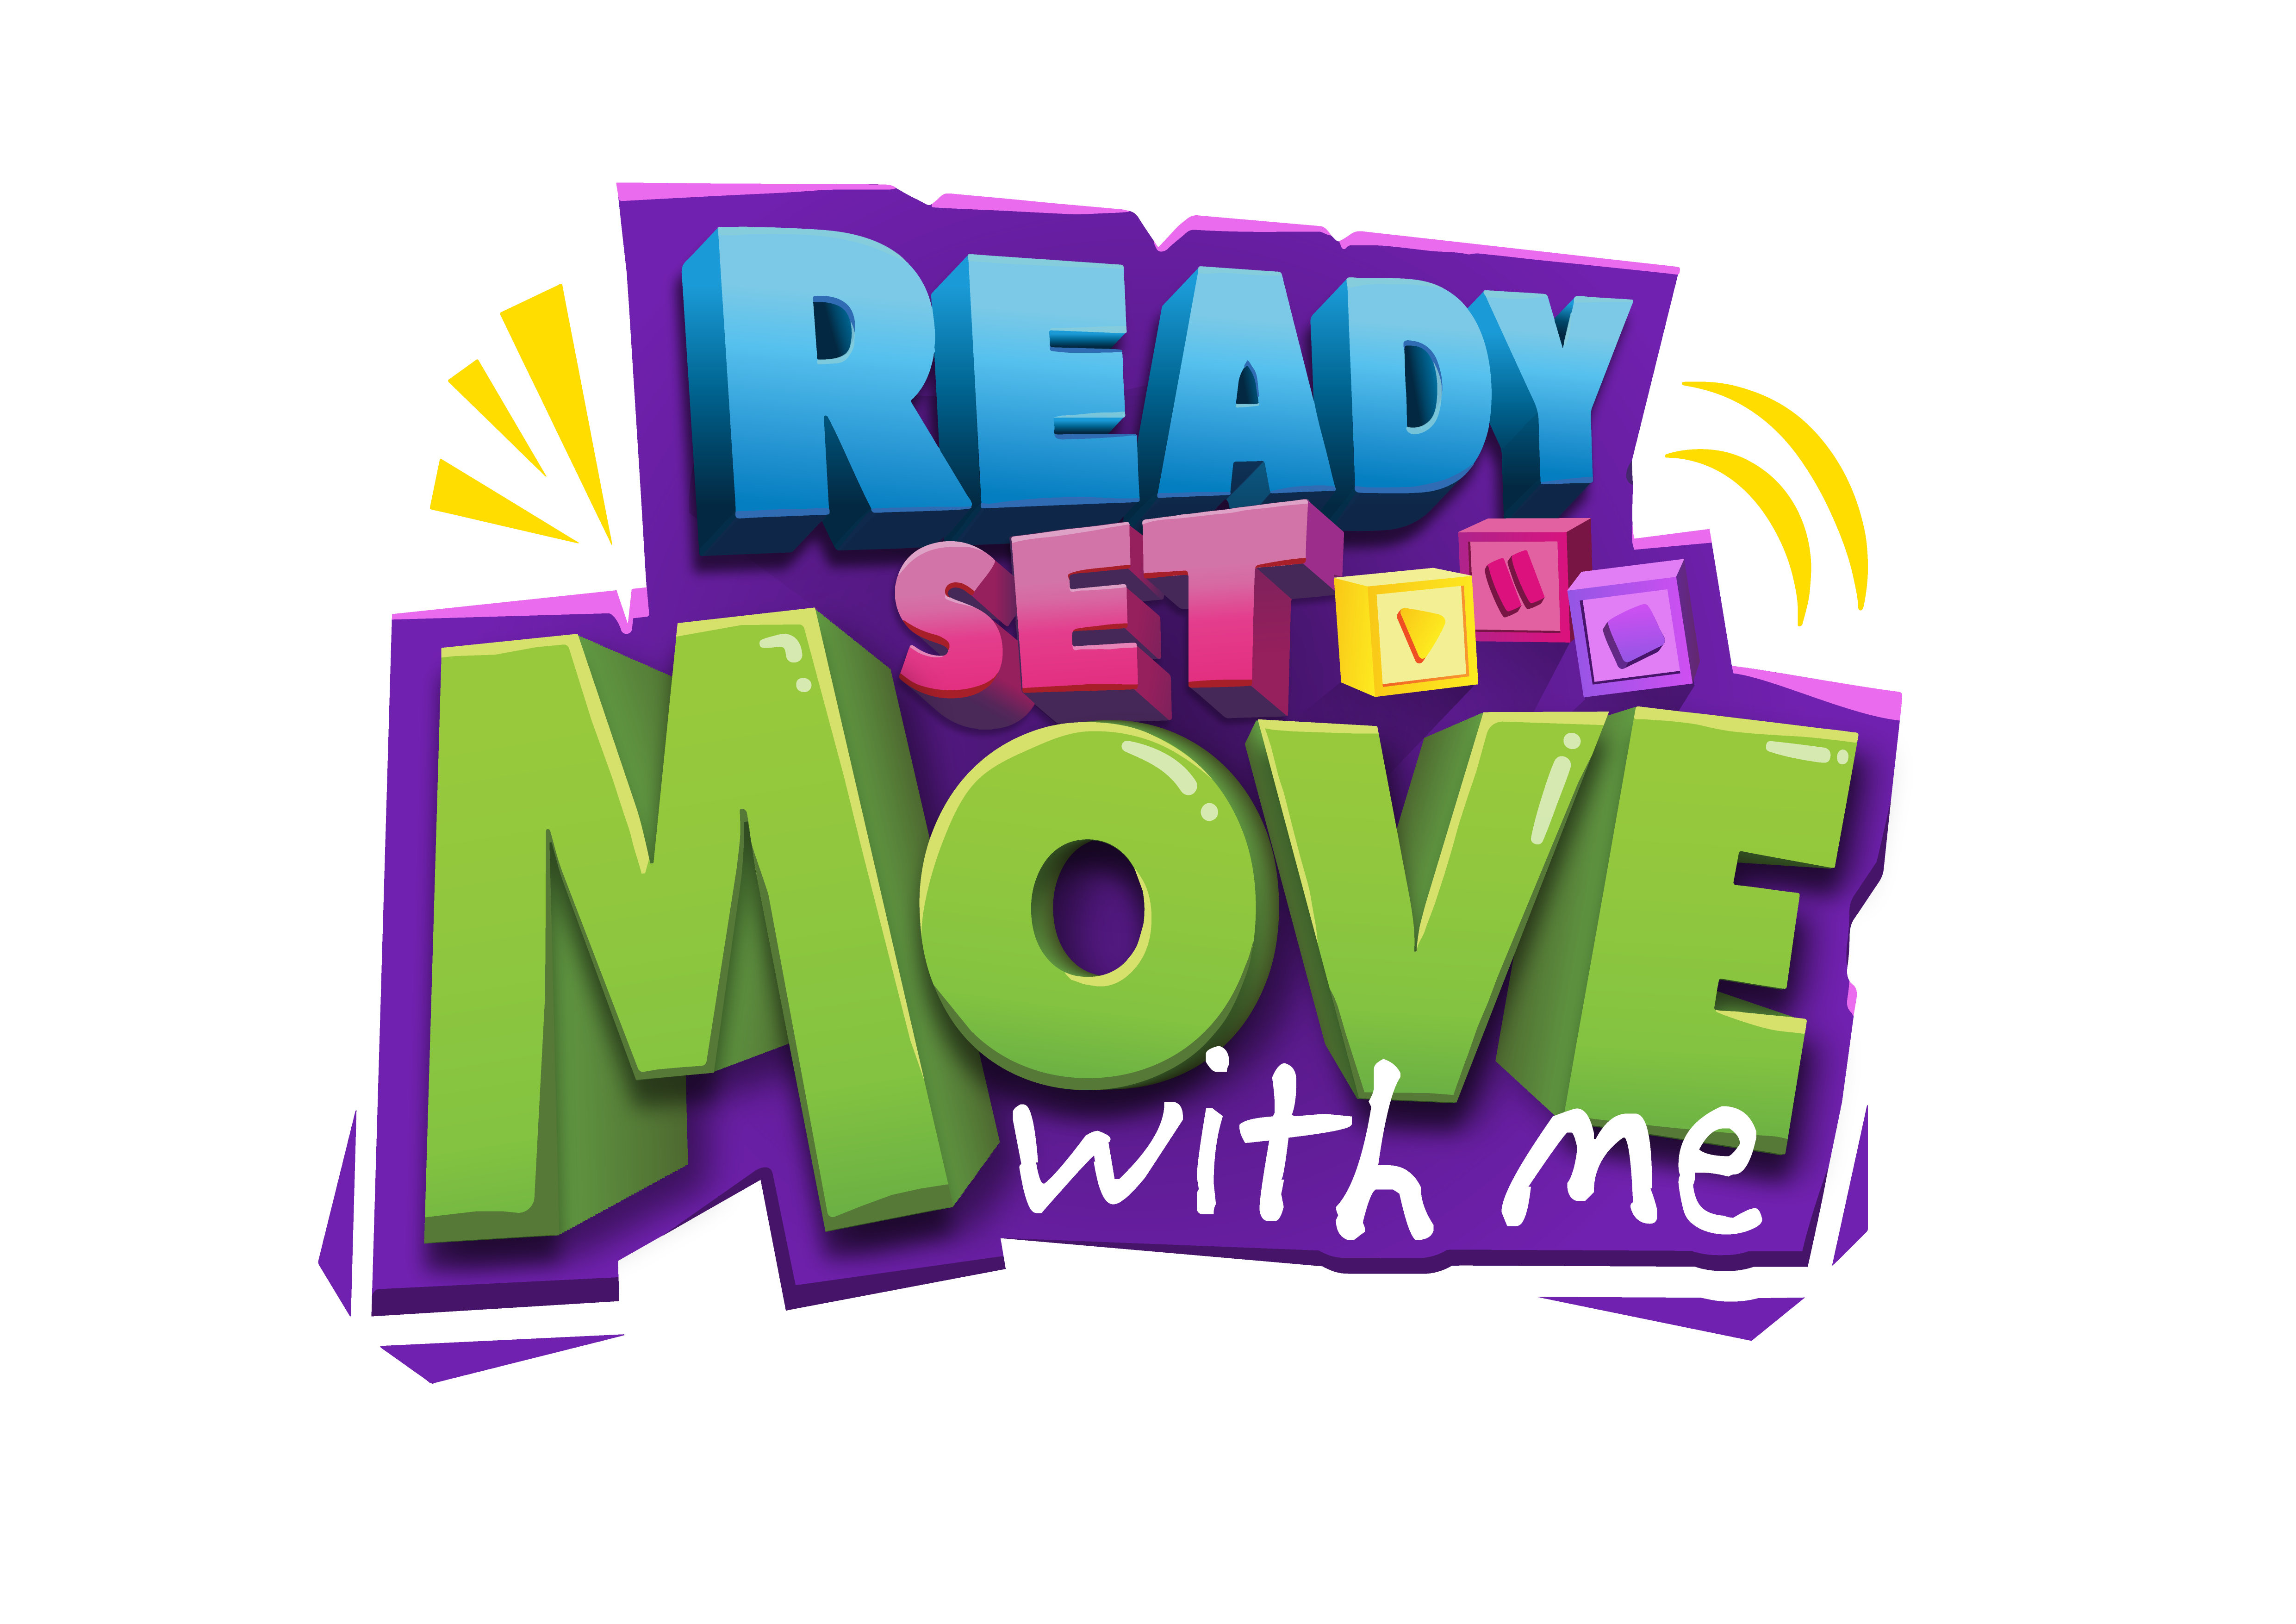 Ready Set Dance logo